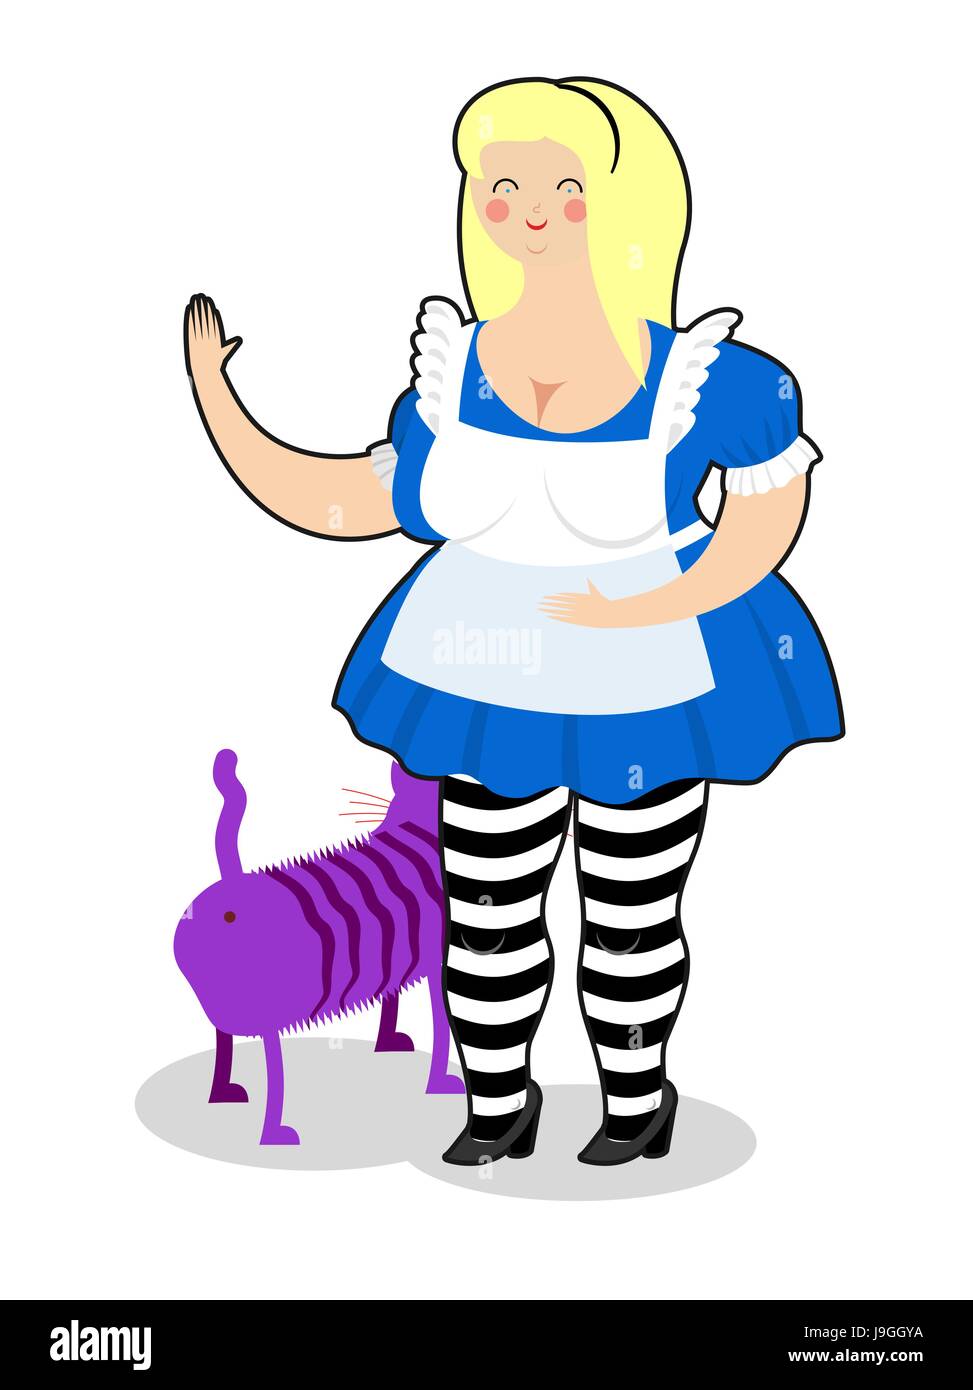 Alice et Cheshire Cat. Vieille grosse femme et minable des animaux fabuleux Illustration de Vecteur